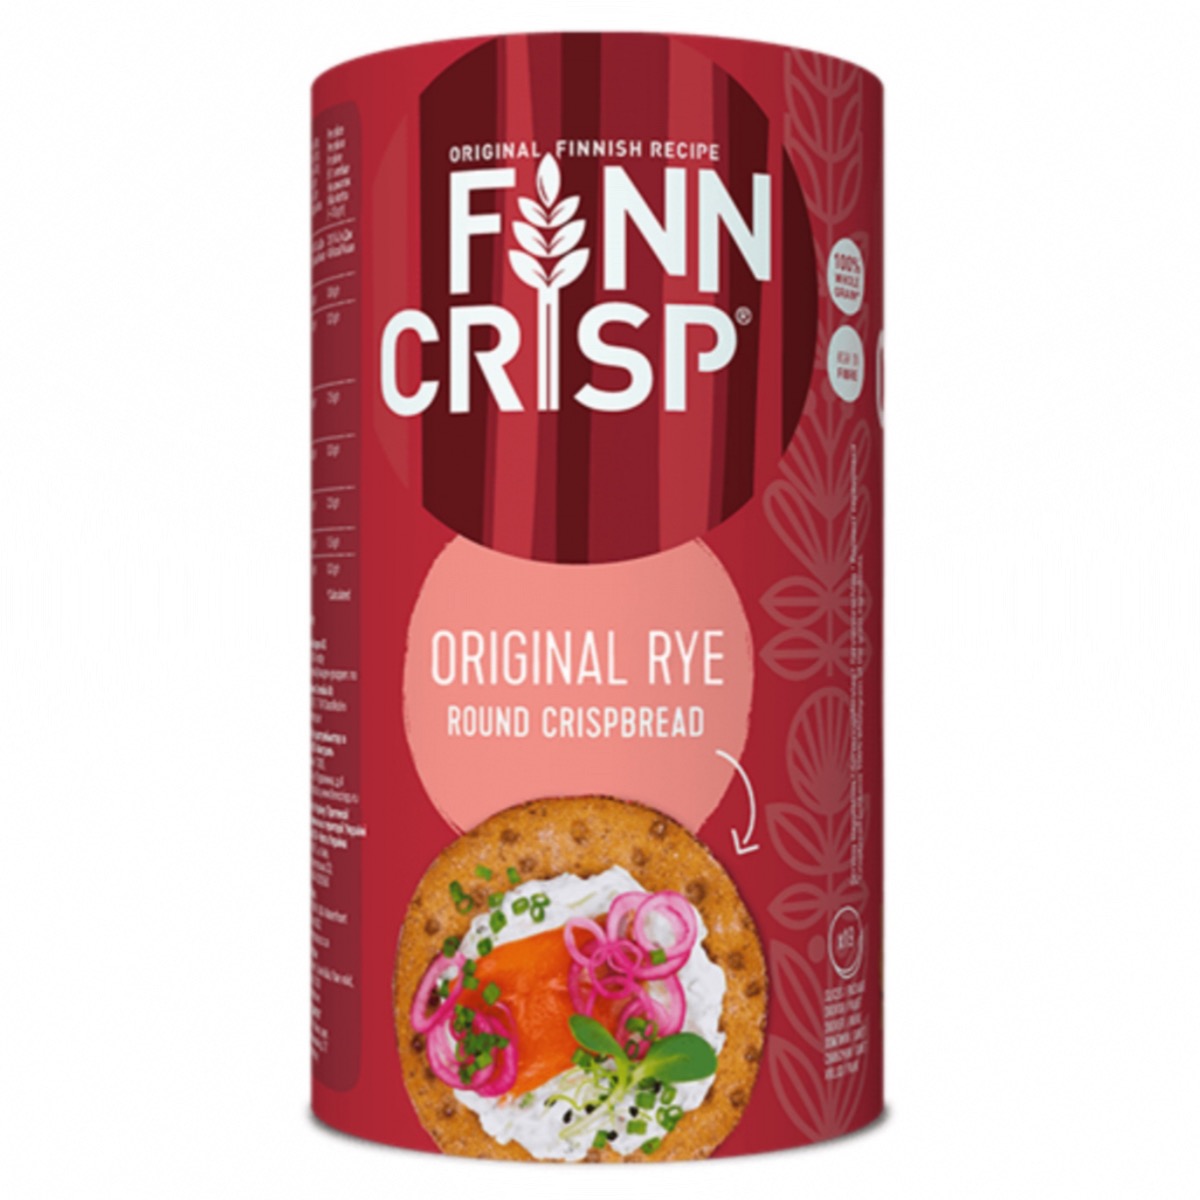 Finn Crisp Original Round Crispbread